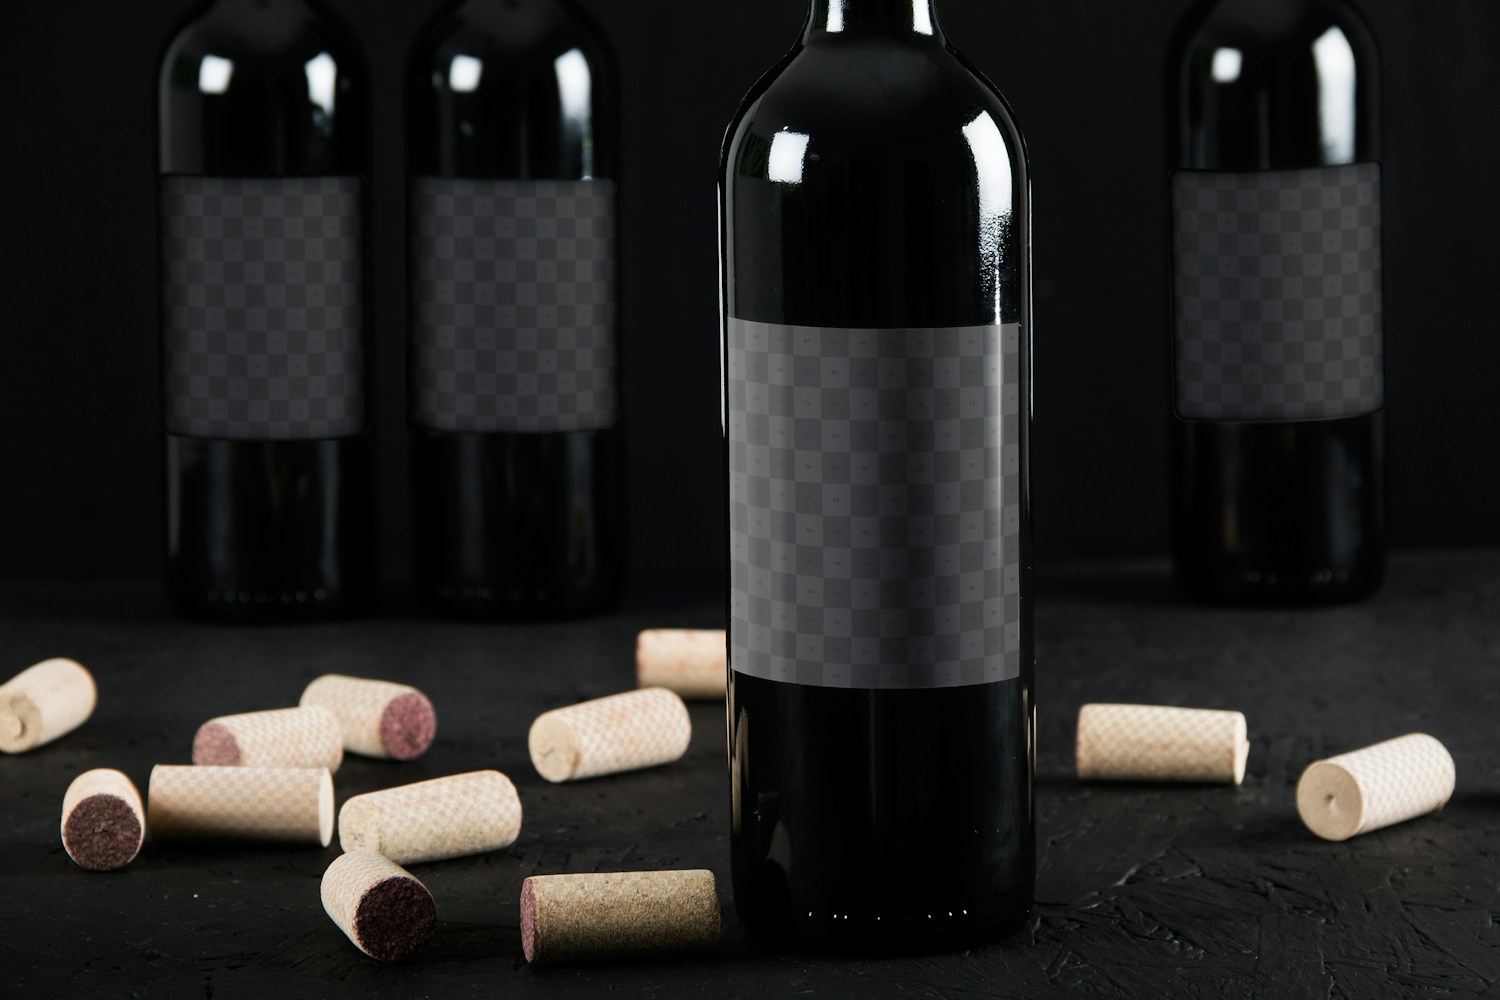 Usa Objetos Inteligentes para facilitar la personalización, la etiqueta de vino tiene un tamaño de 8,5 x 8,7 pulgadas